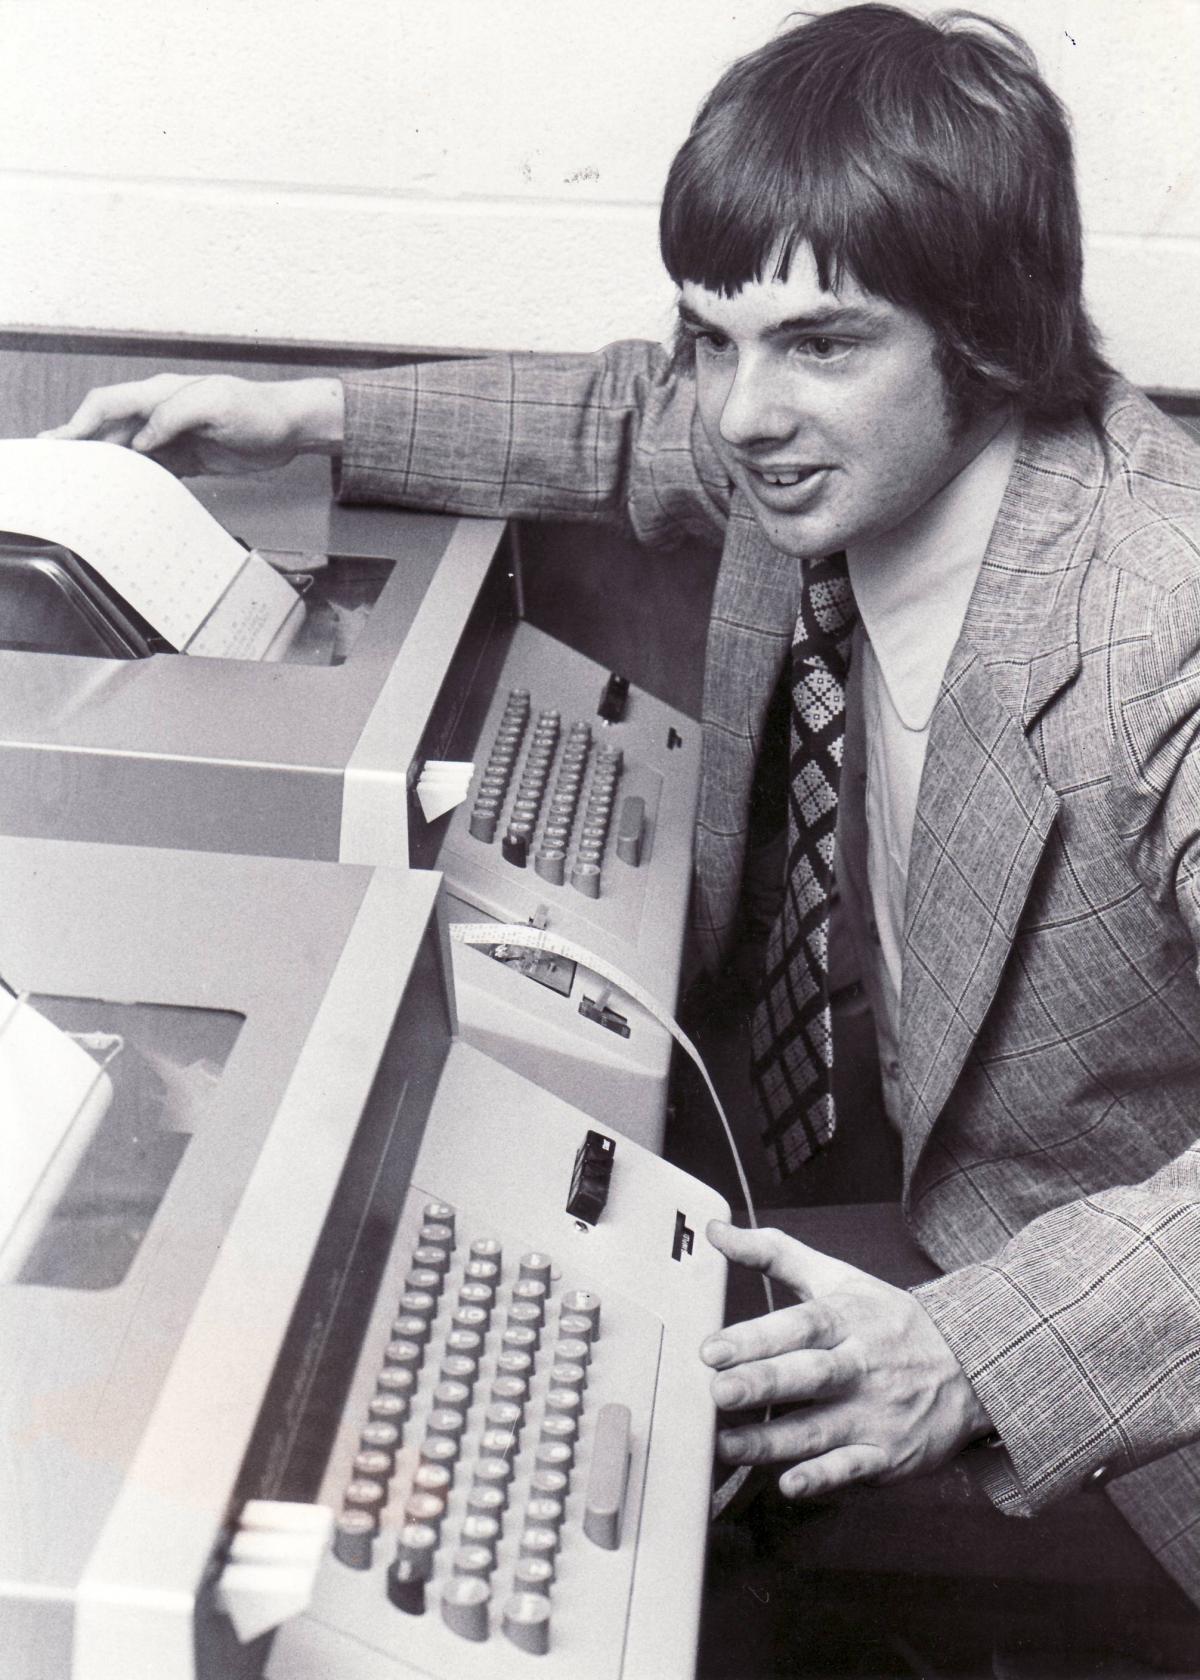 Computer room, 1975